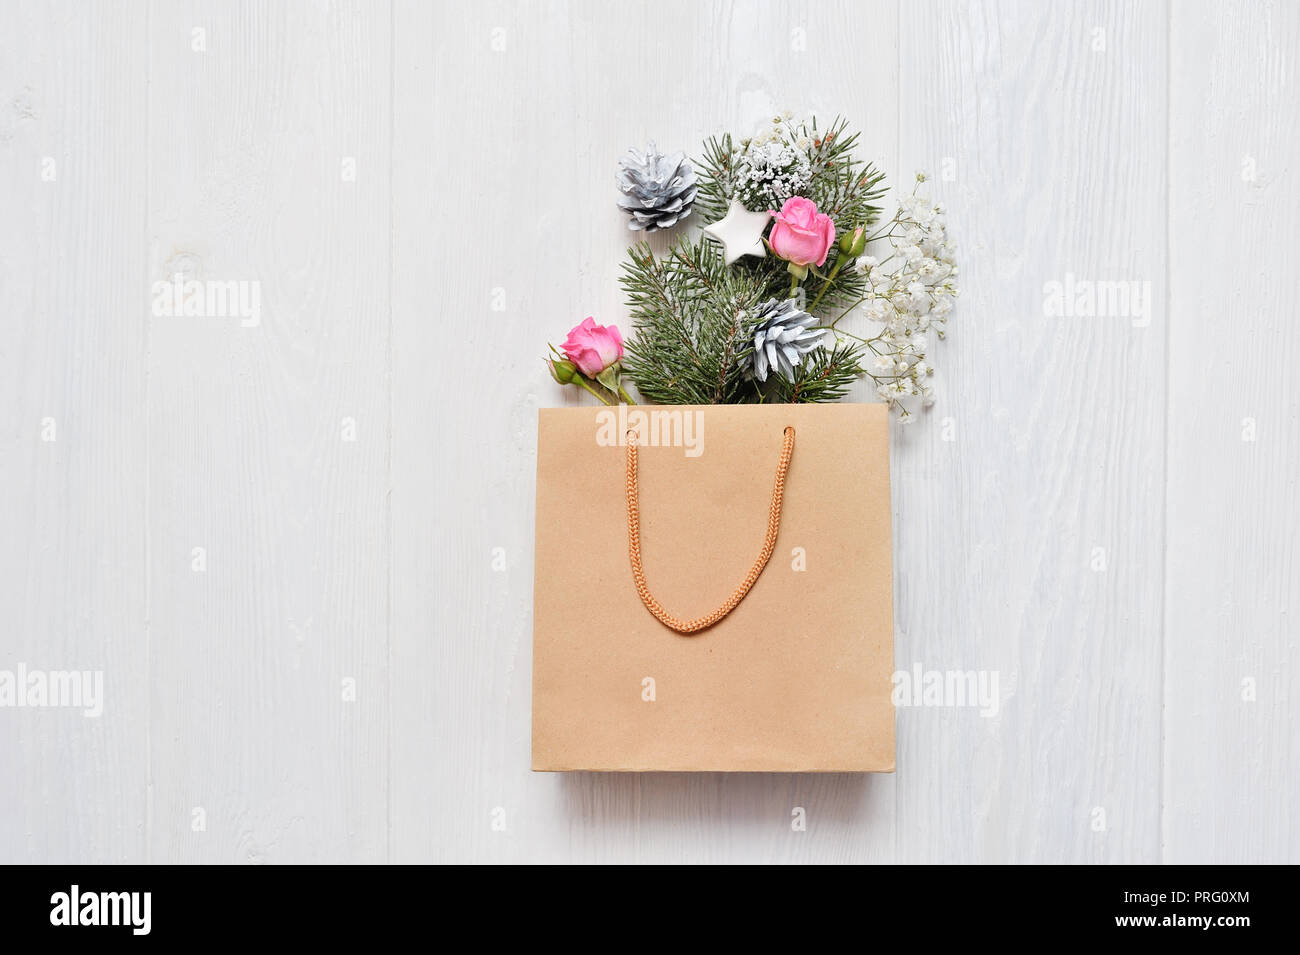 Natale mockup. Pacchetto Kraft con decorazioni di Natale Abete rami, le rose rosa, coni con posto per il vostro testo. Il concetto di shopping. Foto Stock